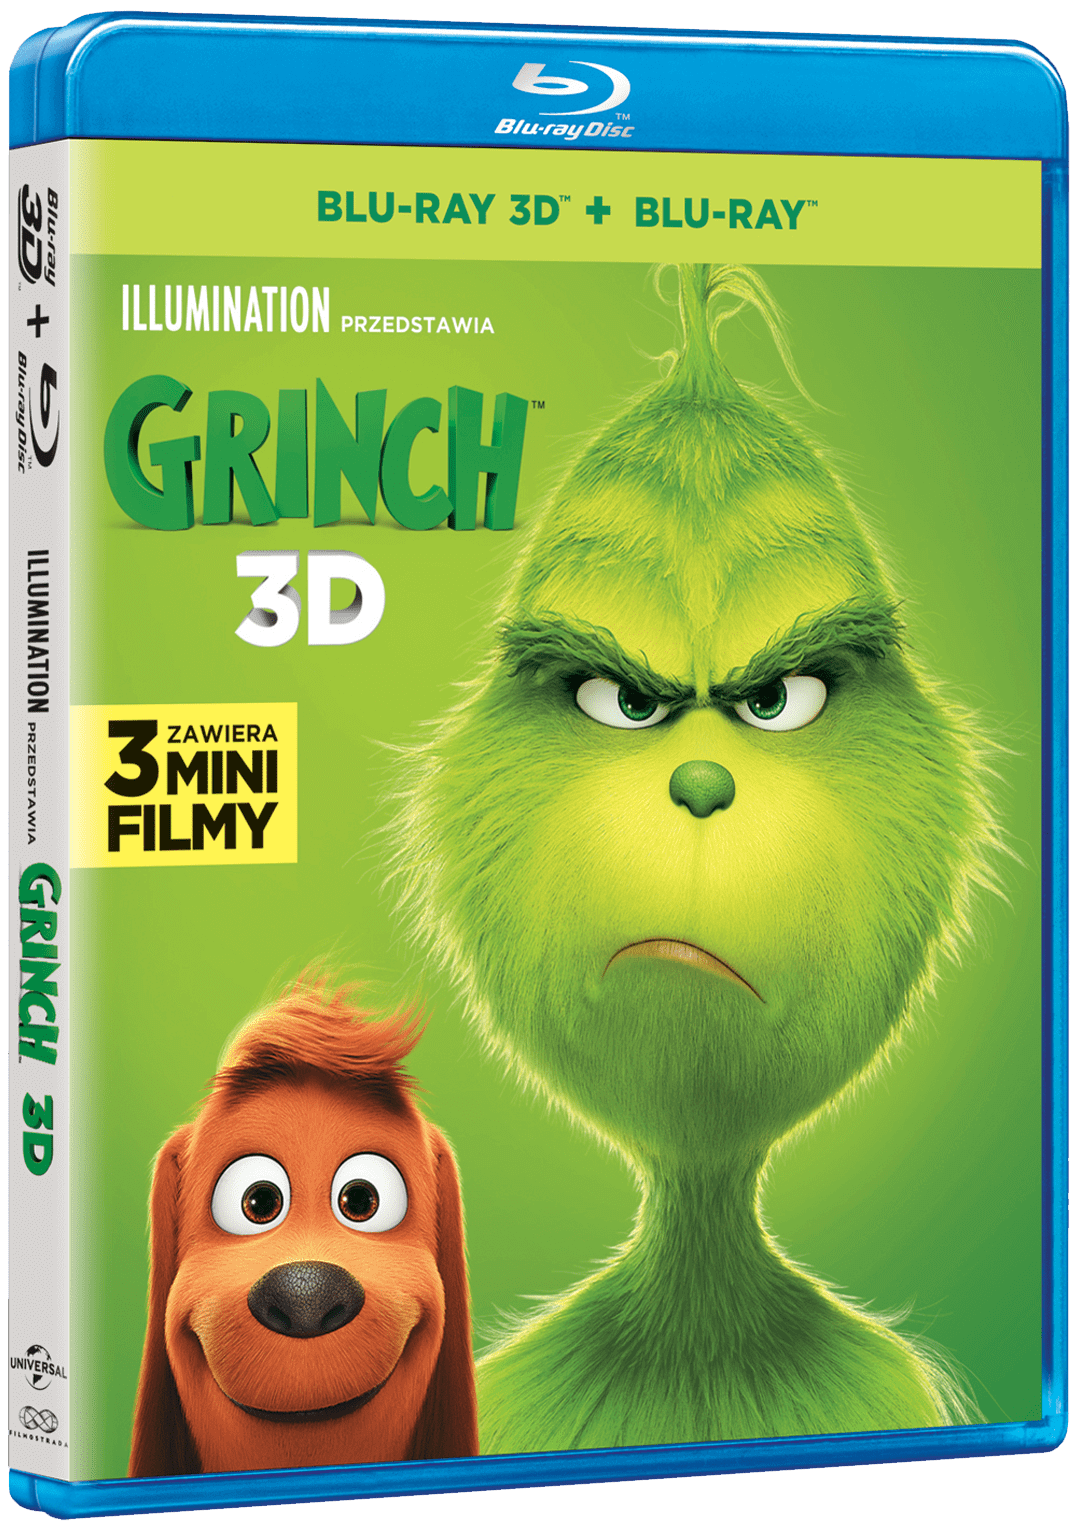 Grinch-2018-BR-3D-pack-min.png